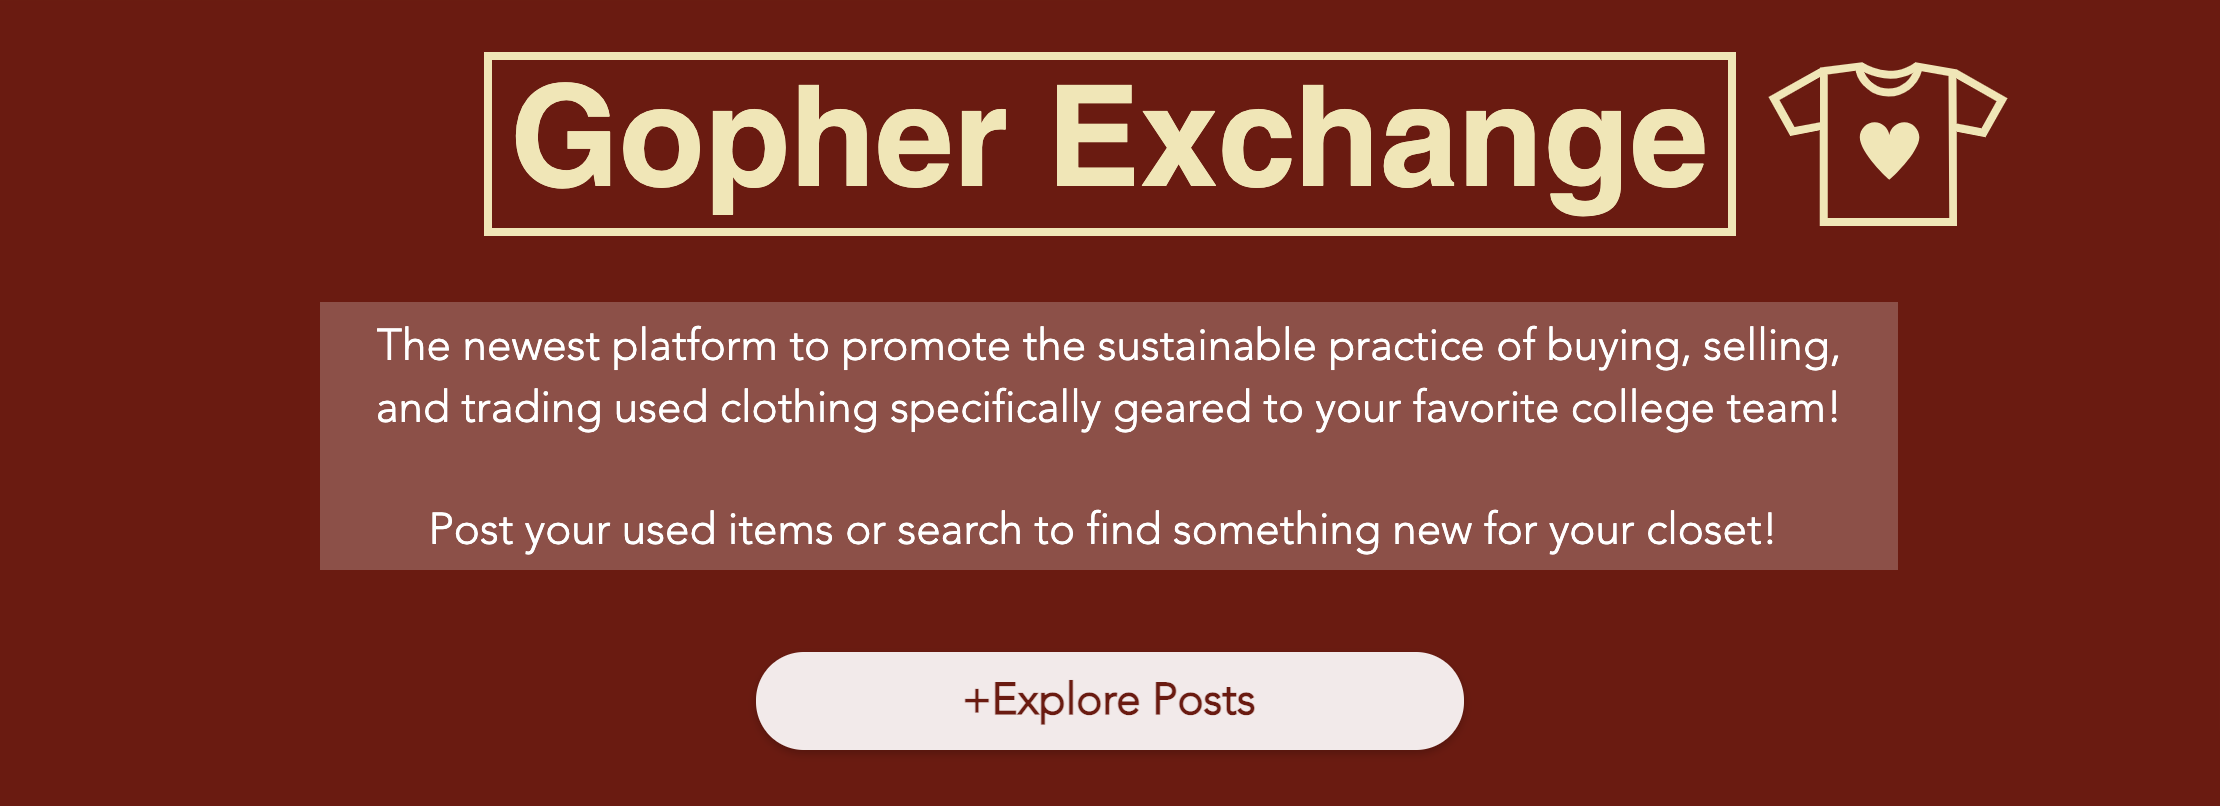 Gopher Exchange